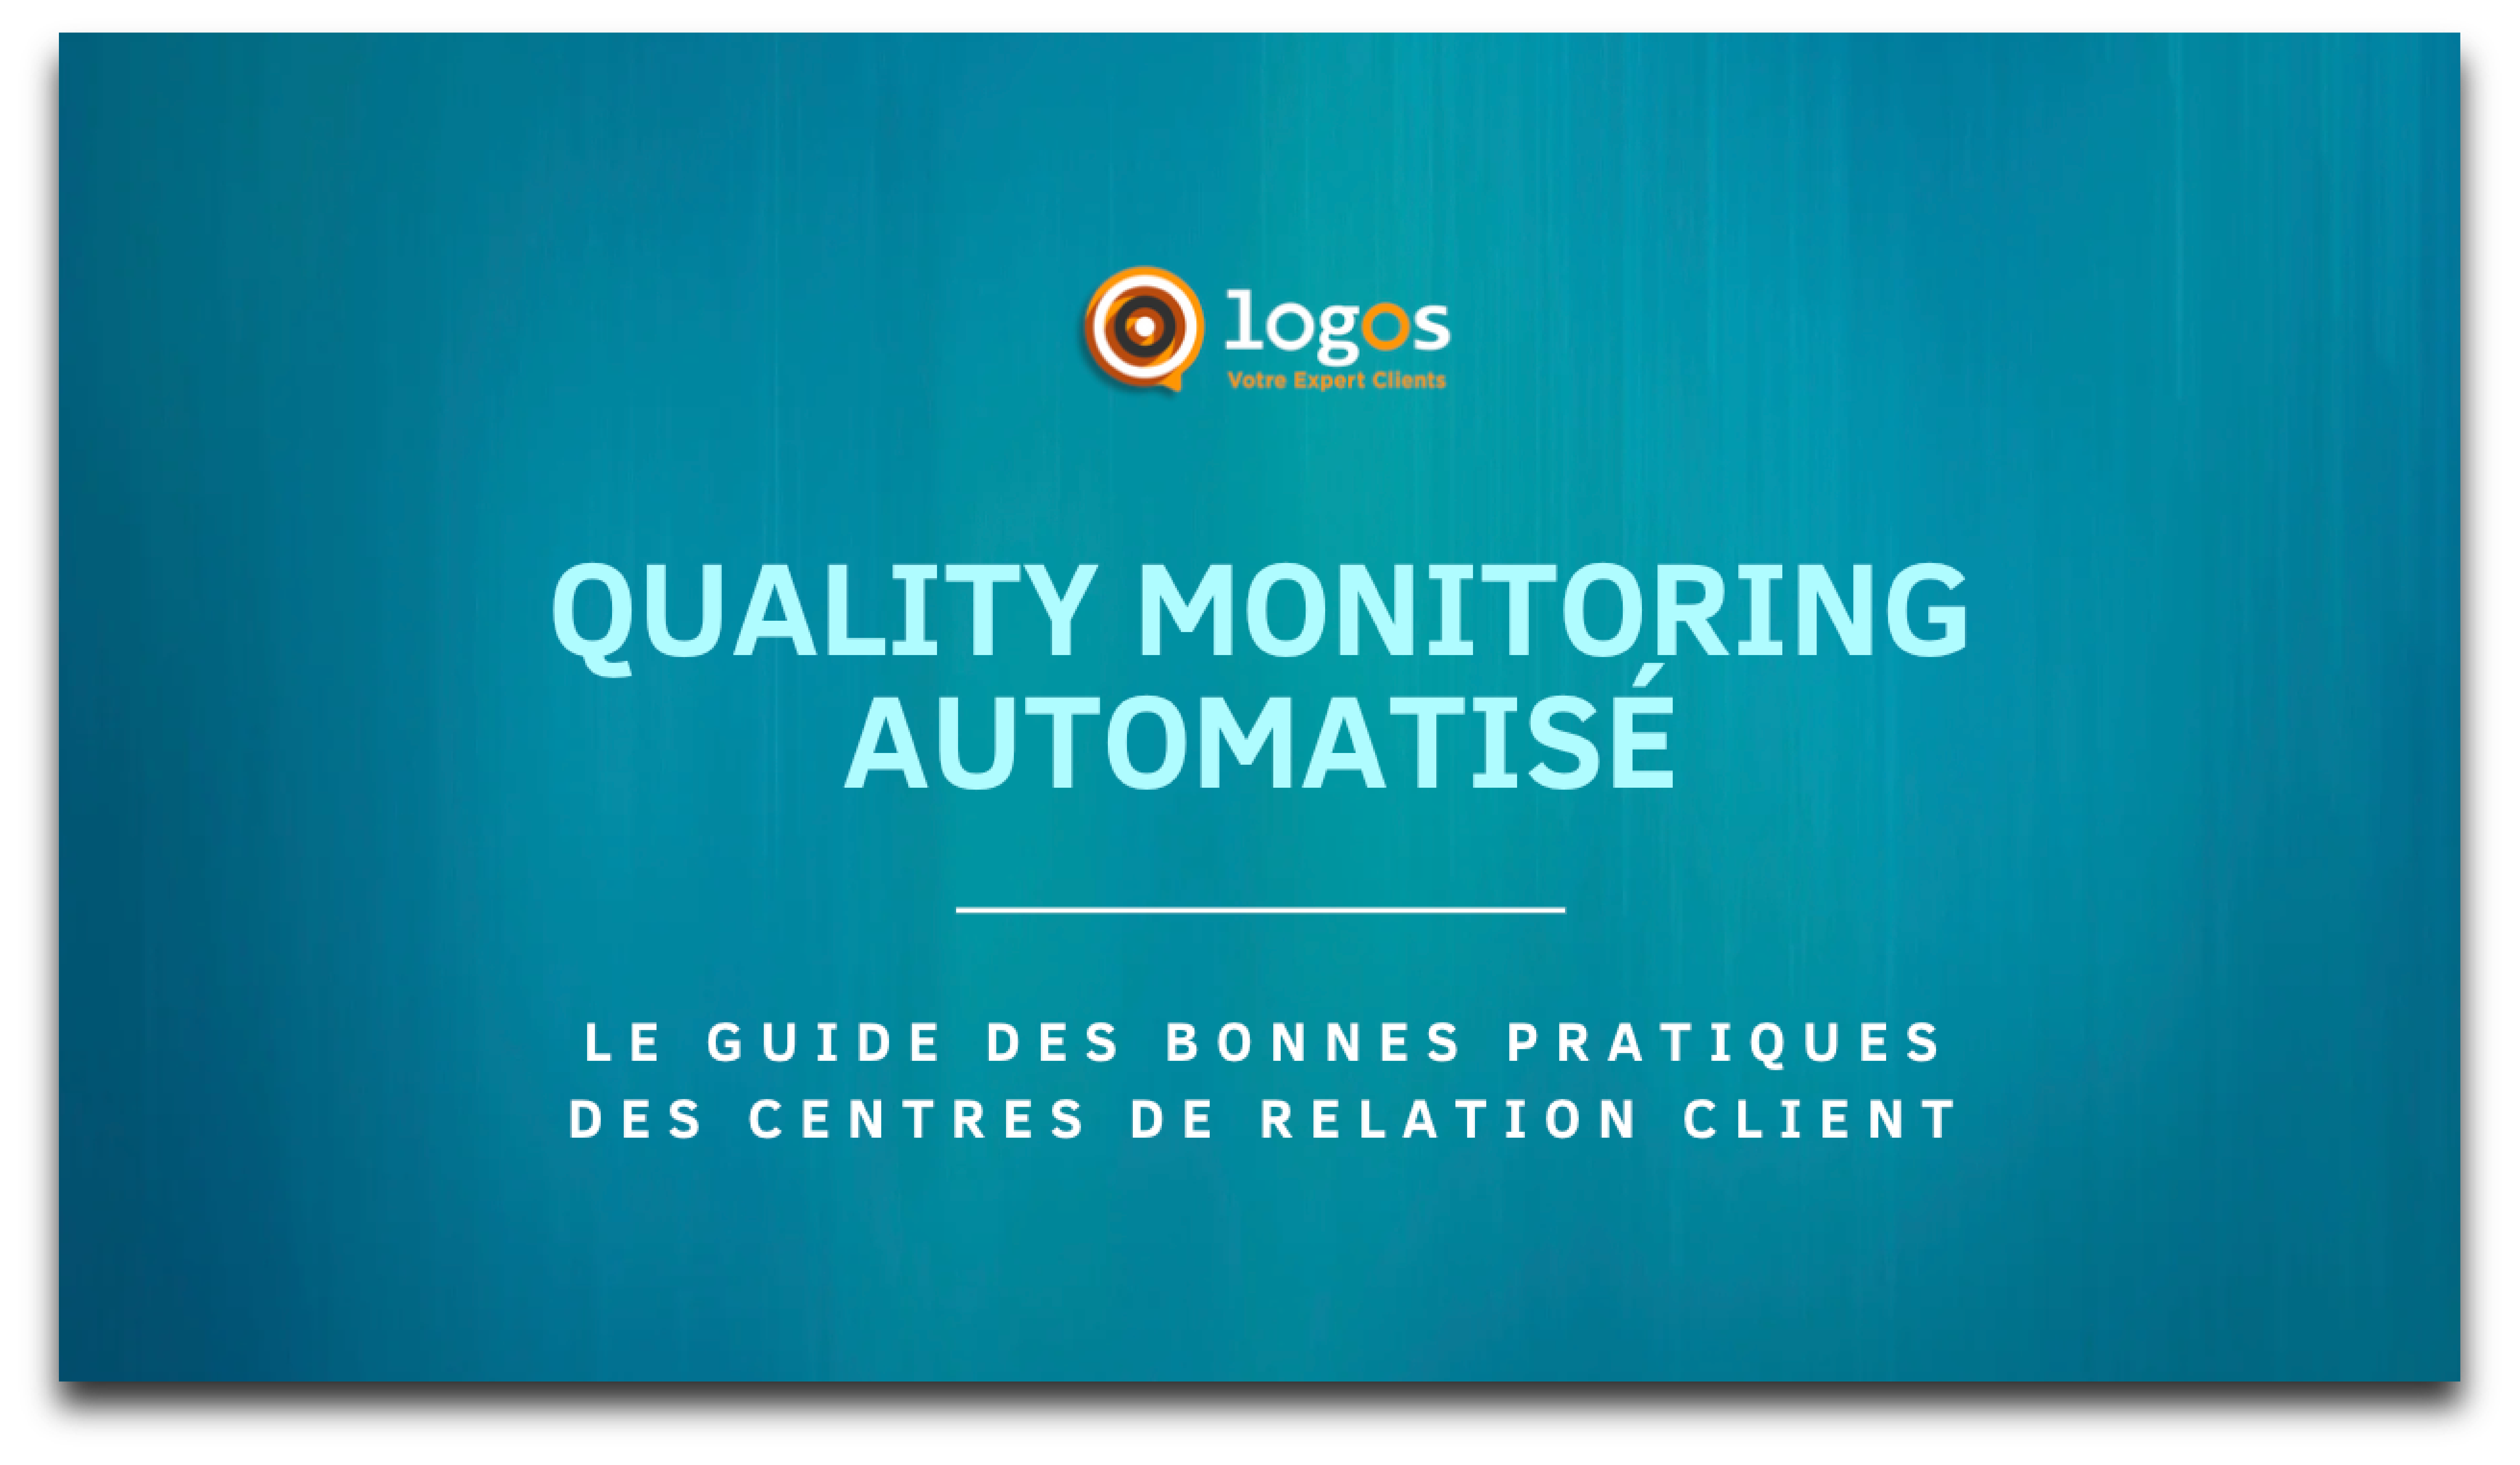 Le guide du Quality Monitoring automatisé des centres de relation client